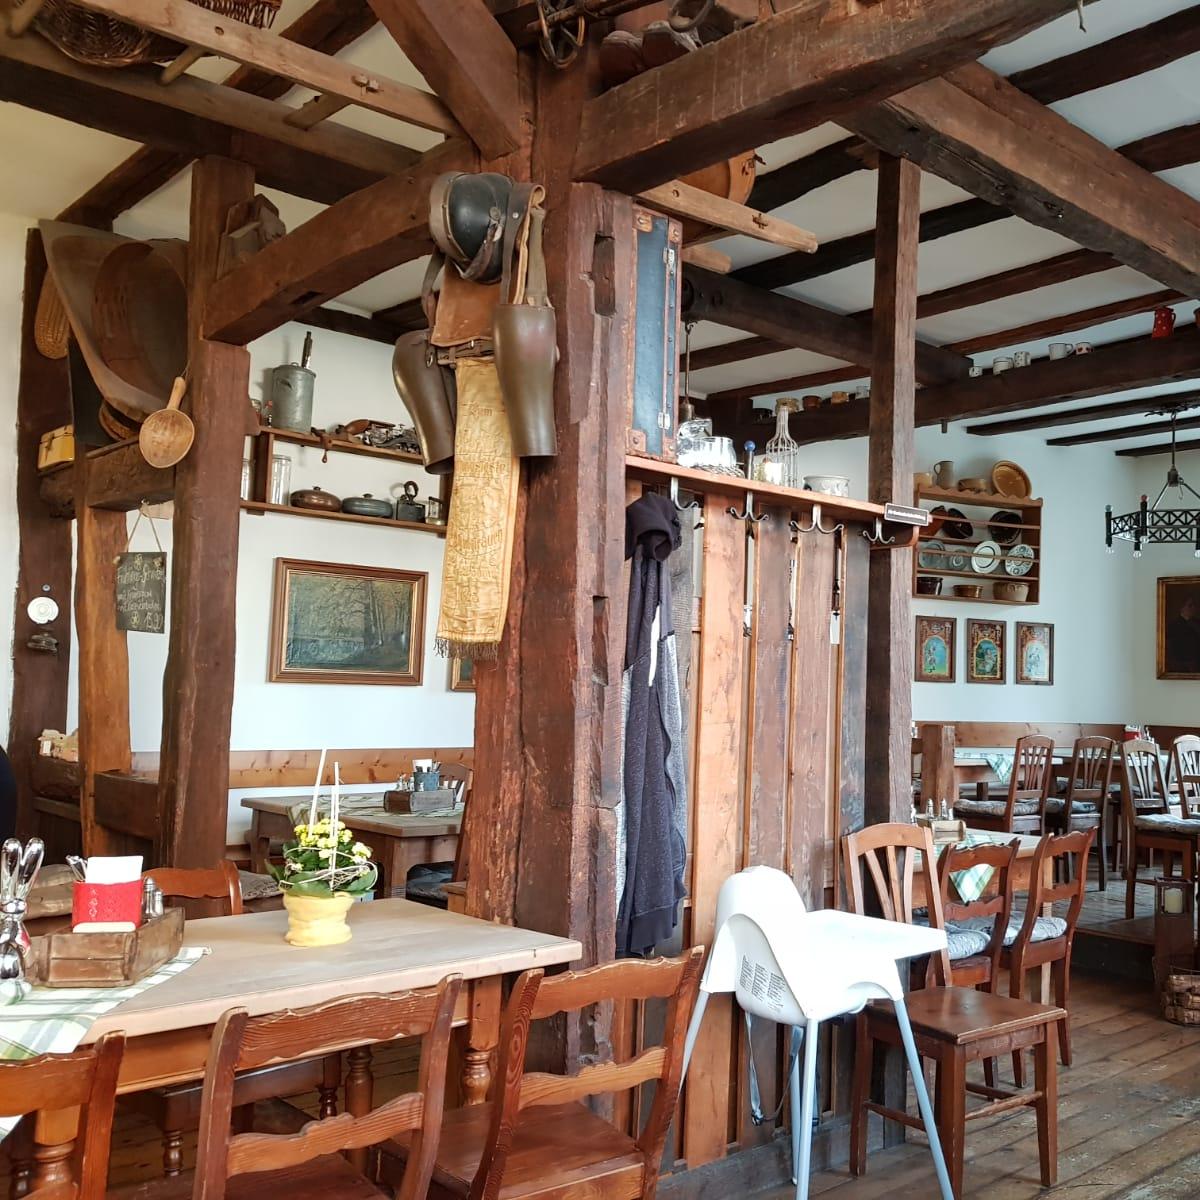 Restaurant "Brennerei Schnapskeller Elsässer" in  Kleinkahl